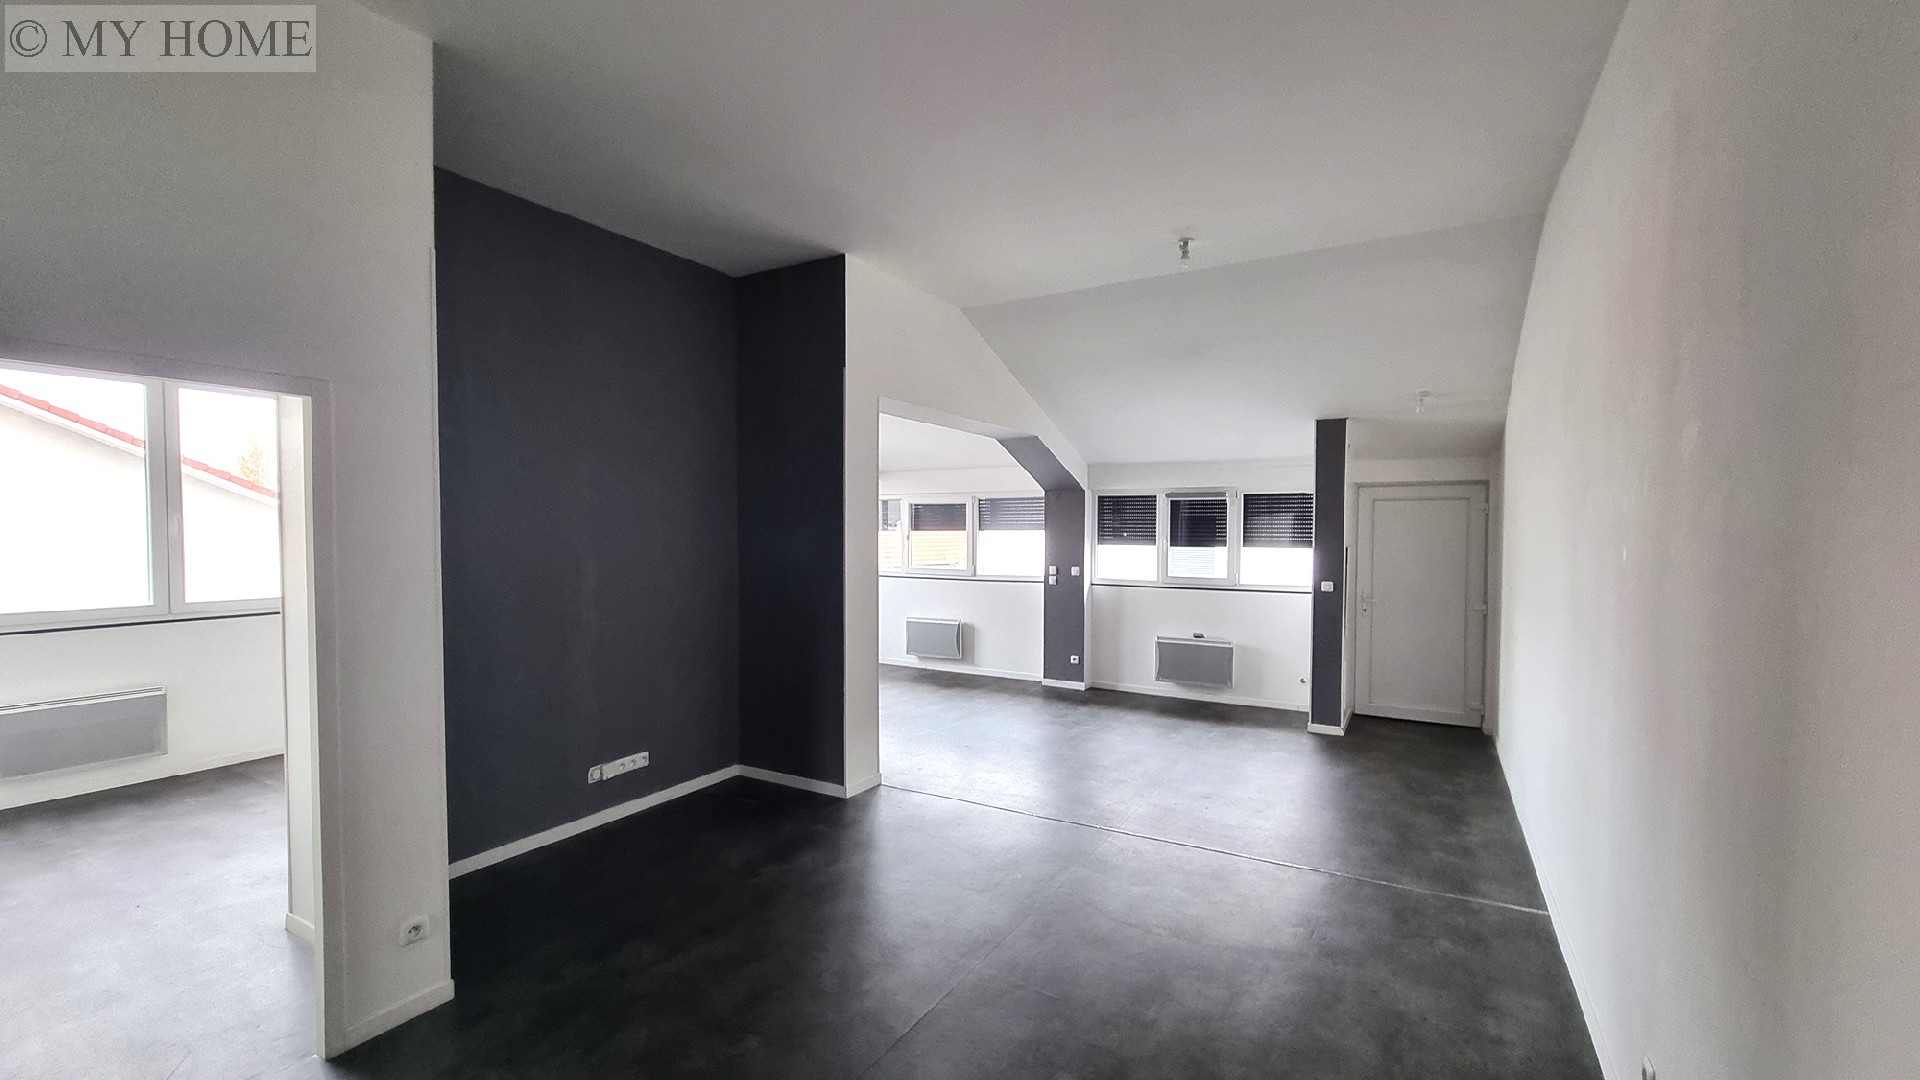 Location appartement - TOUL 93 m², 5 pièces